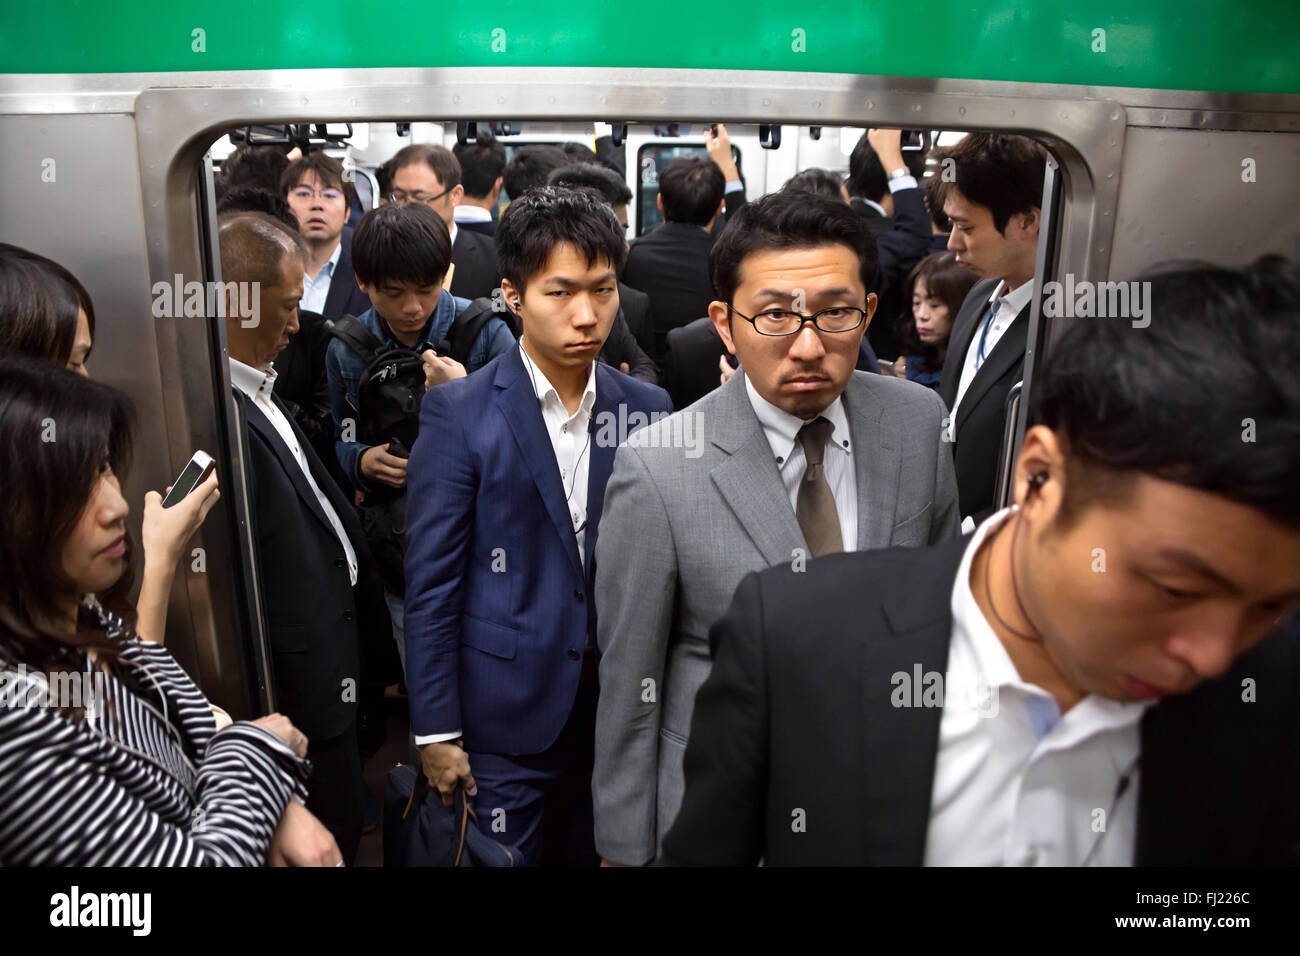 Menge und Rush Hour in den frühen Morgen für die Beschäftigten in der U-Bahn von Tokio, Japan Stockfoto